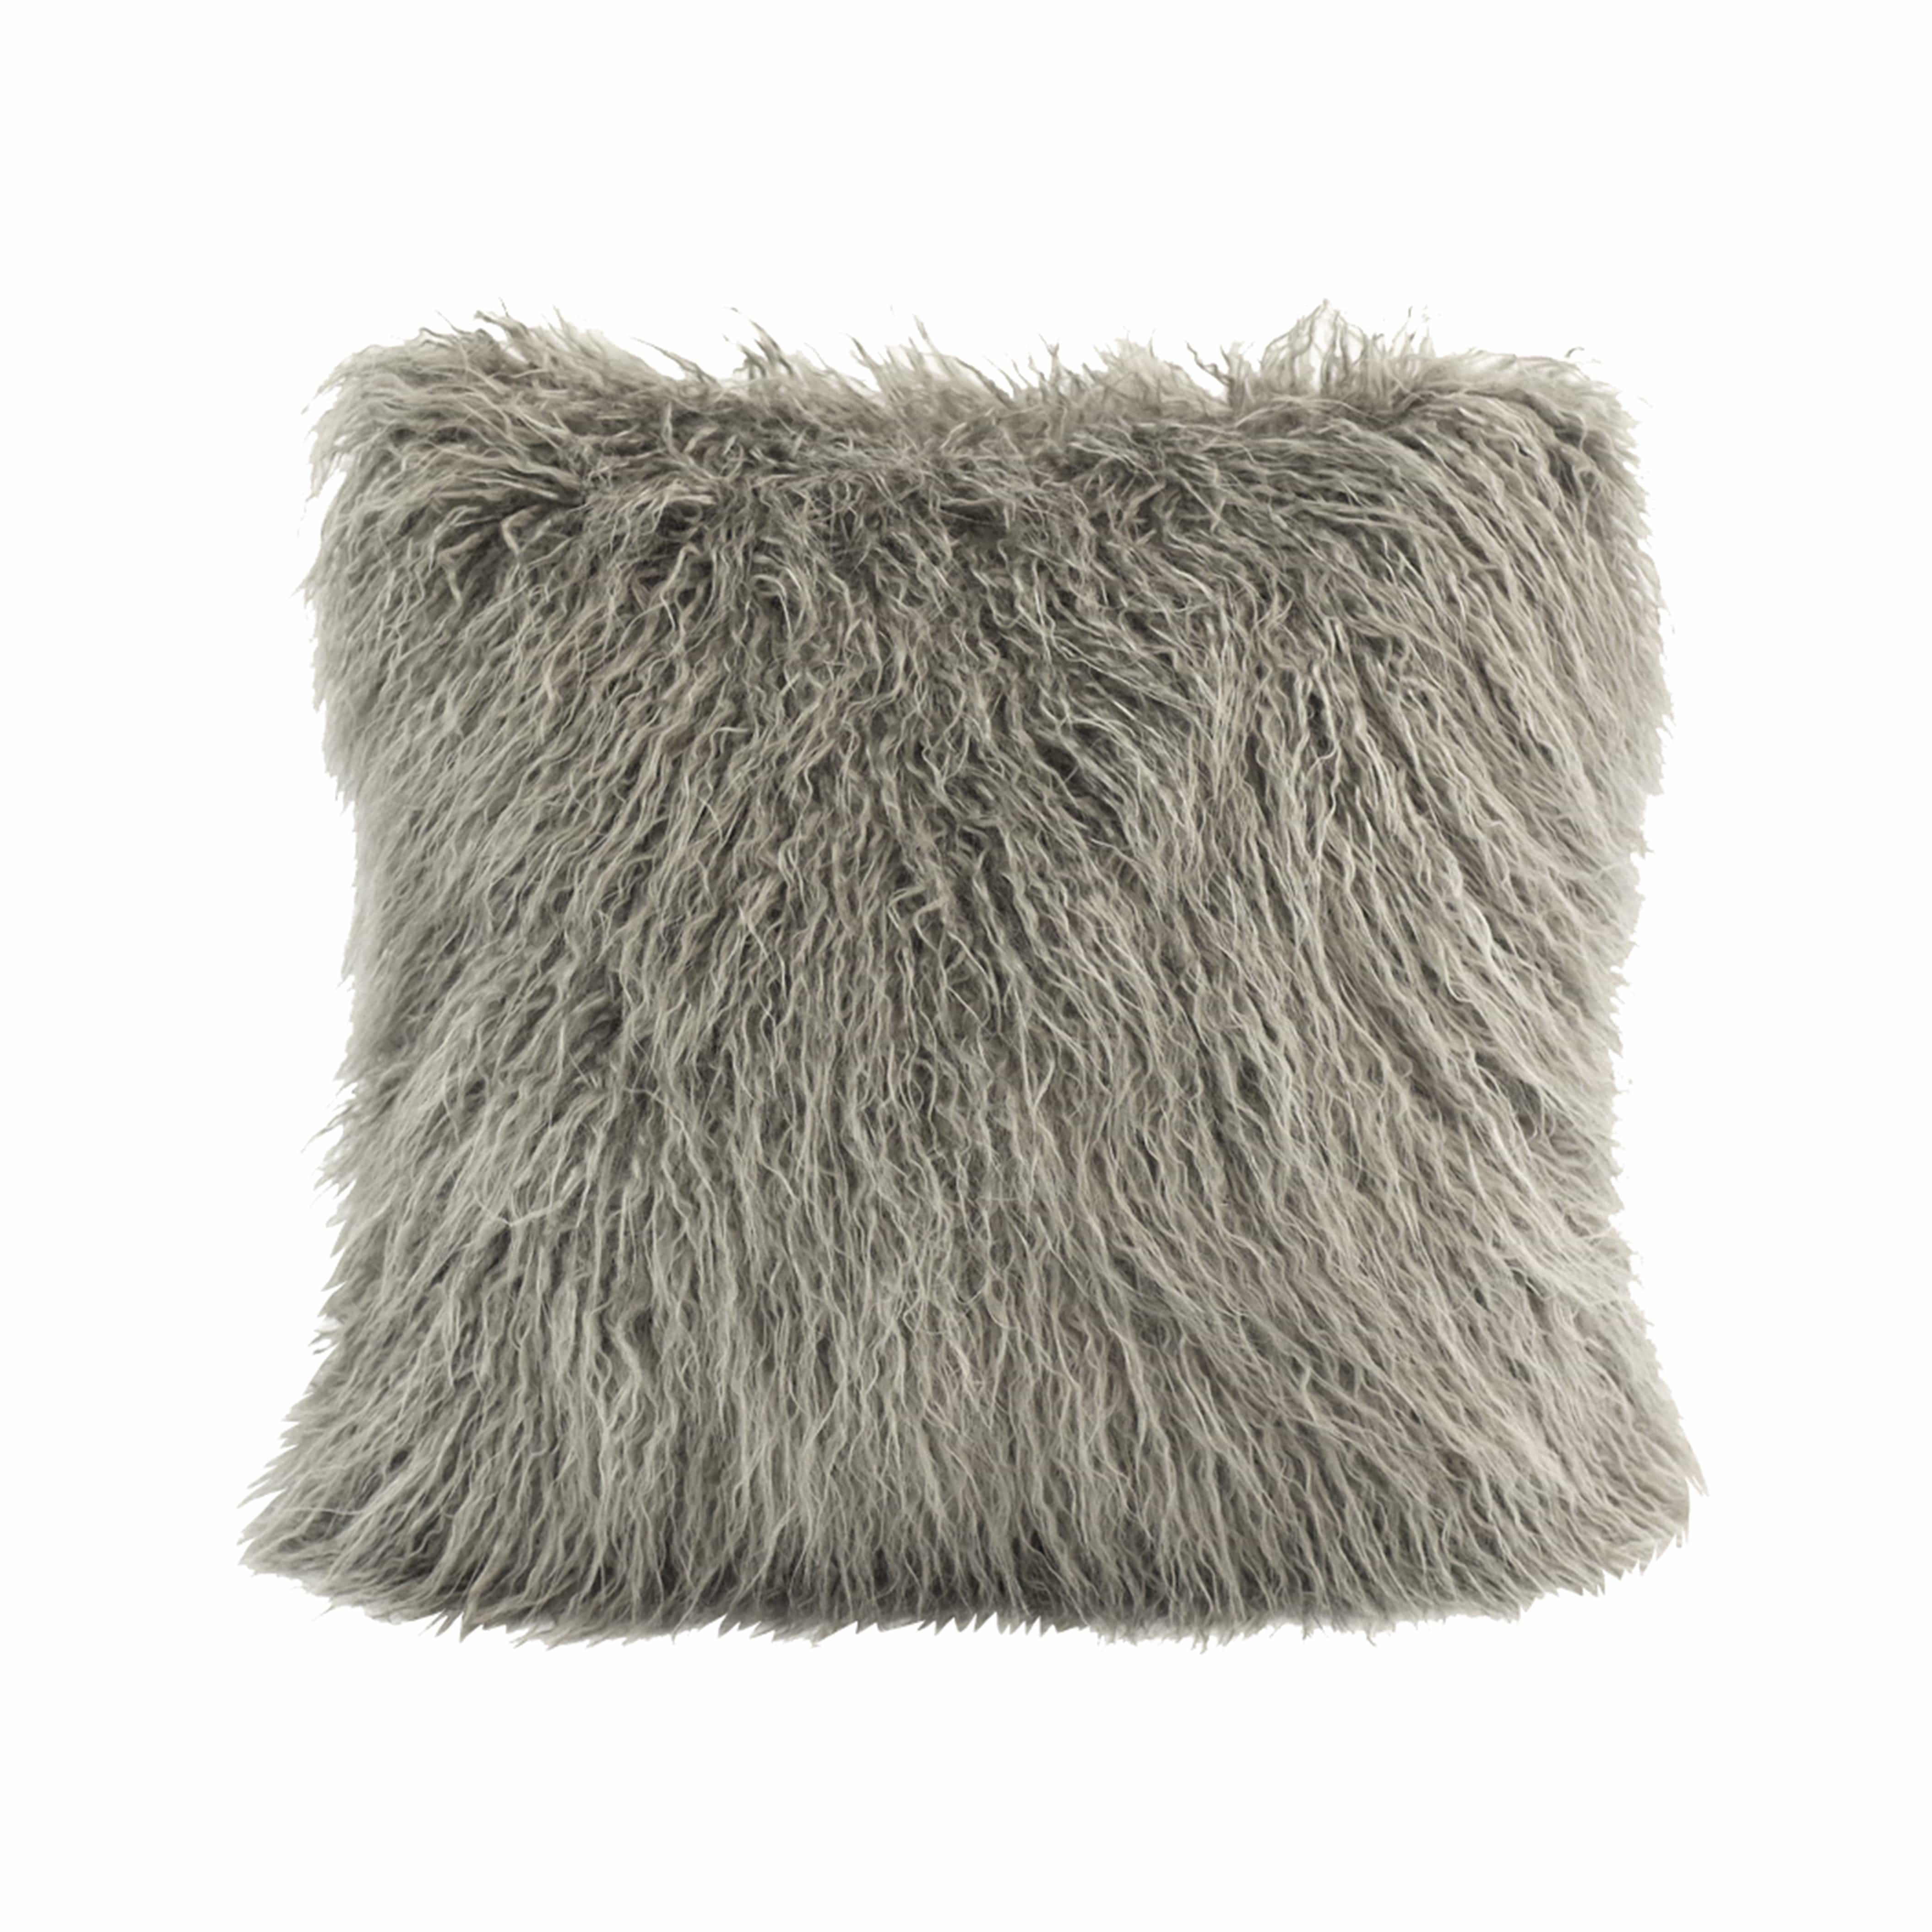 HiEnd Accents Gray Mongolian Faux Fur Pillow